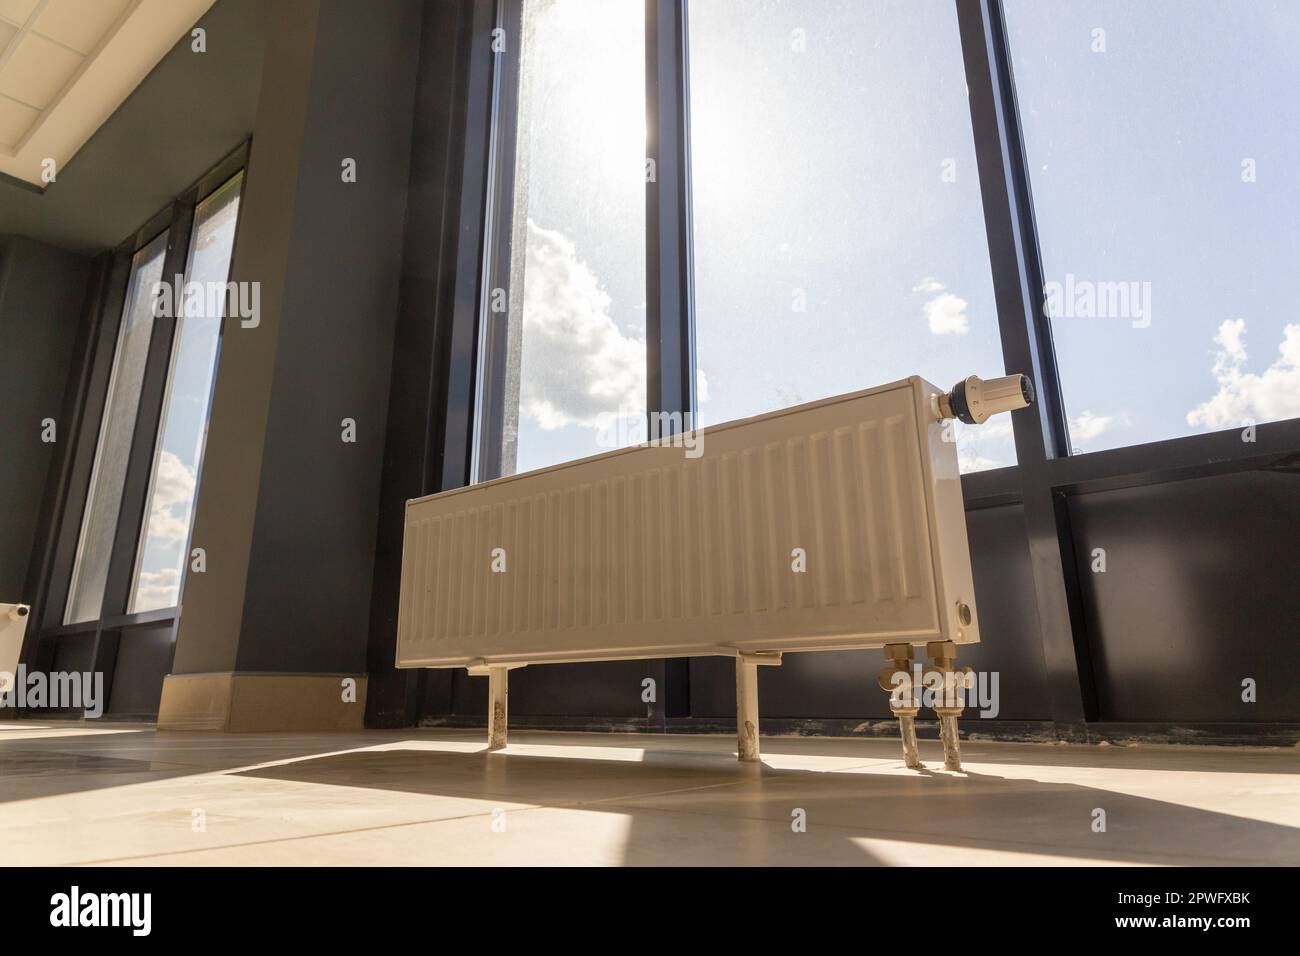 Vertikal installierter Zentralheizungskühler auf dem Boden an der vollständig verglasten Außenwand des Bürogebäudes. Ein weißer Heizkörper in einem Raum mit einem Stockfoto